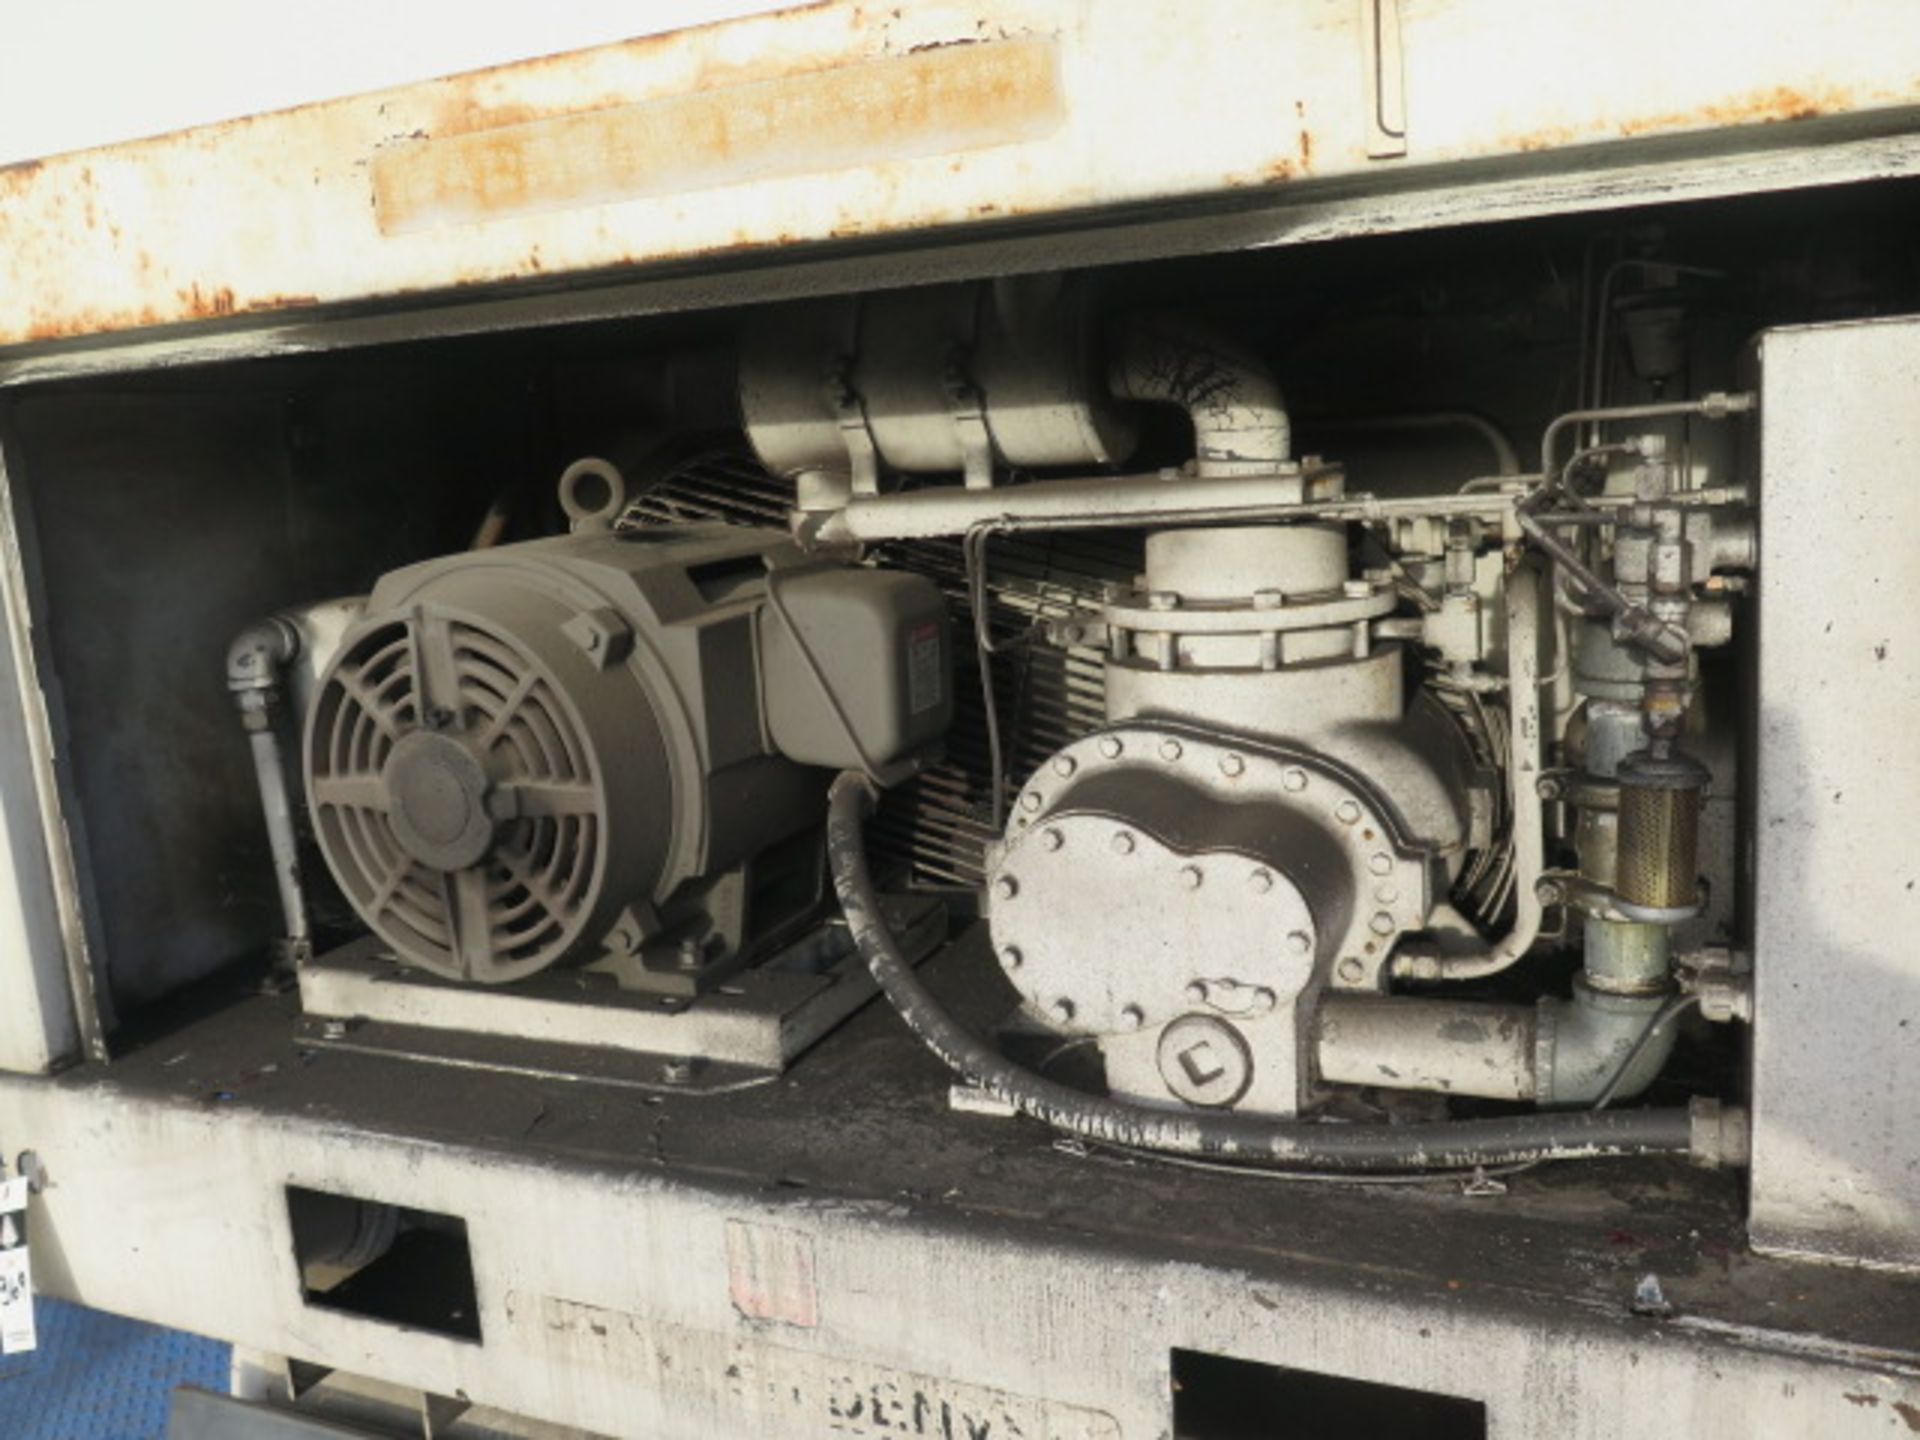 Gardner Denver "Eletrs-Screw" 25Hp Rotary Screw Air Compressor w/ Auto Sentry-S Controls - Image 5 of 6